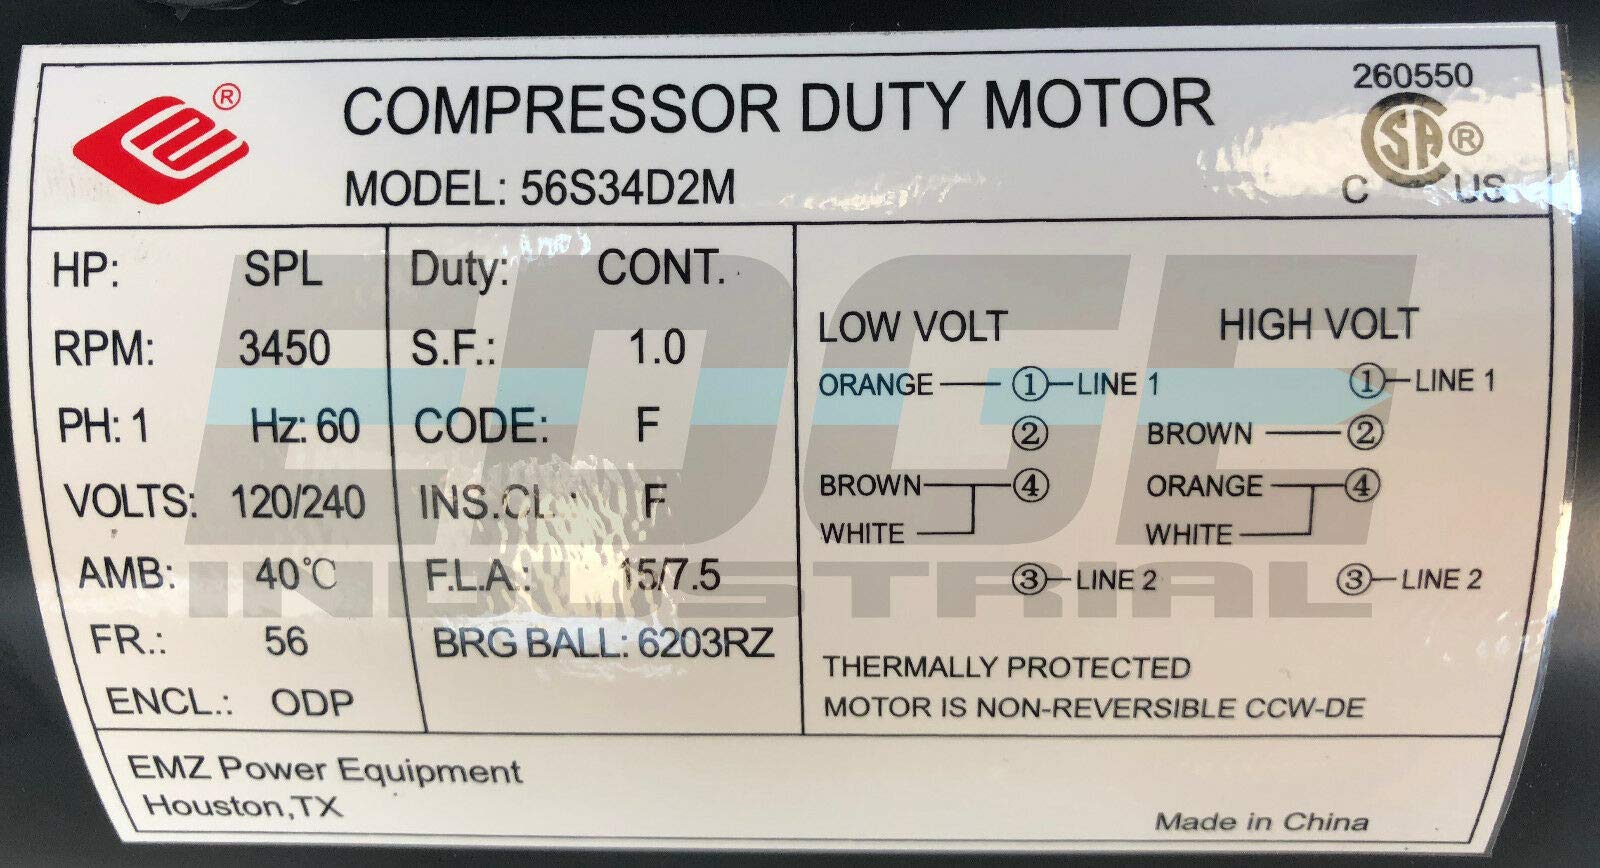 Mua NEW HP SPL Compressor Duty Electric Motor, 3450 RPM, 56 Frame, 5/8